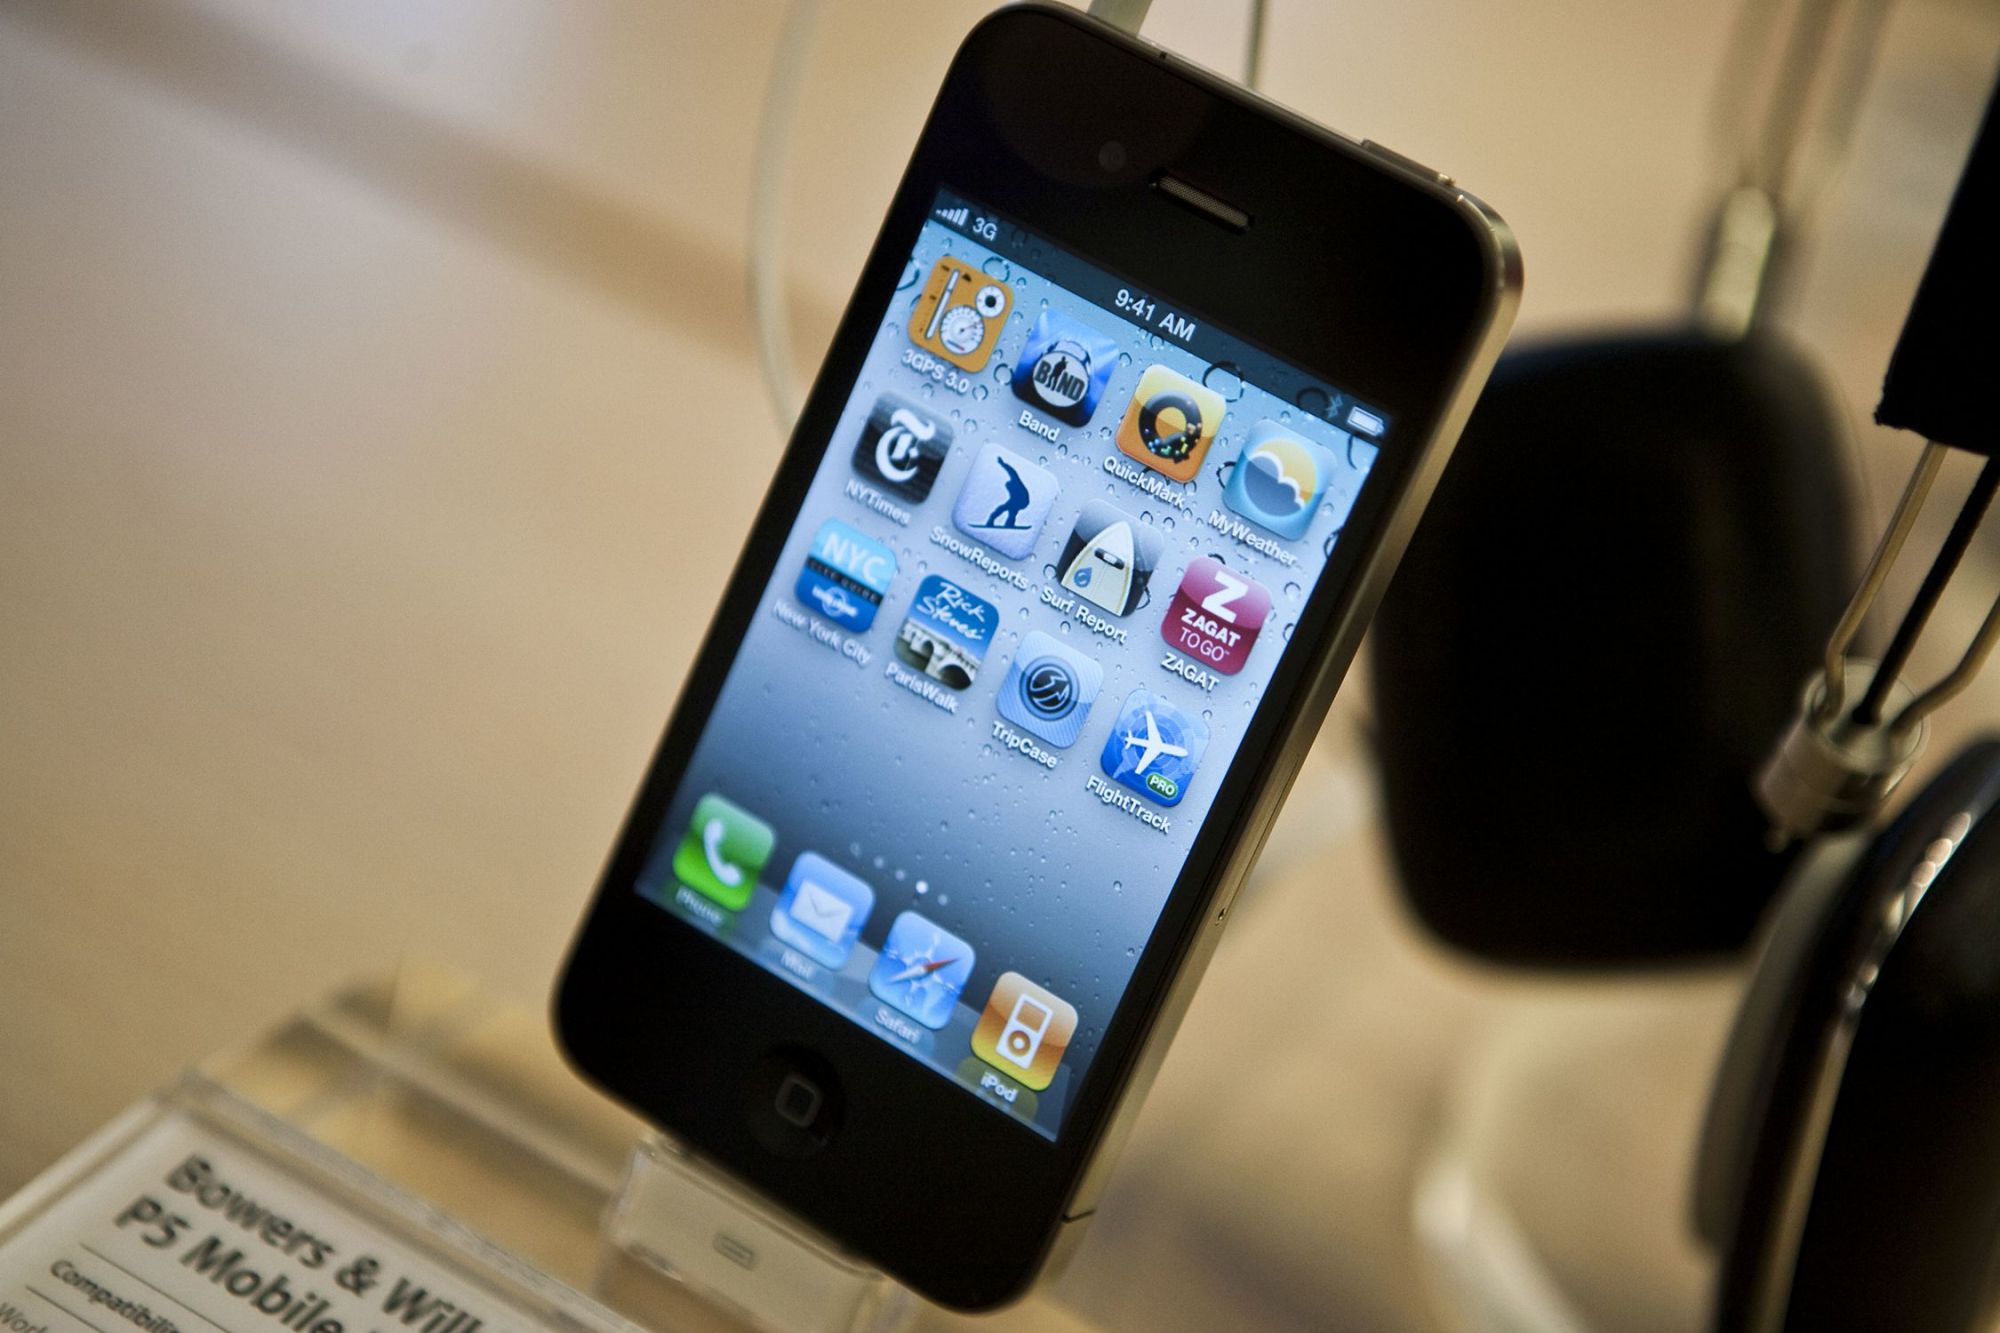 当年不慎丢失iphone4原型机的苹果员工,后来怎么样了?